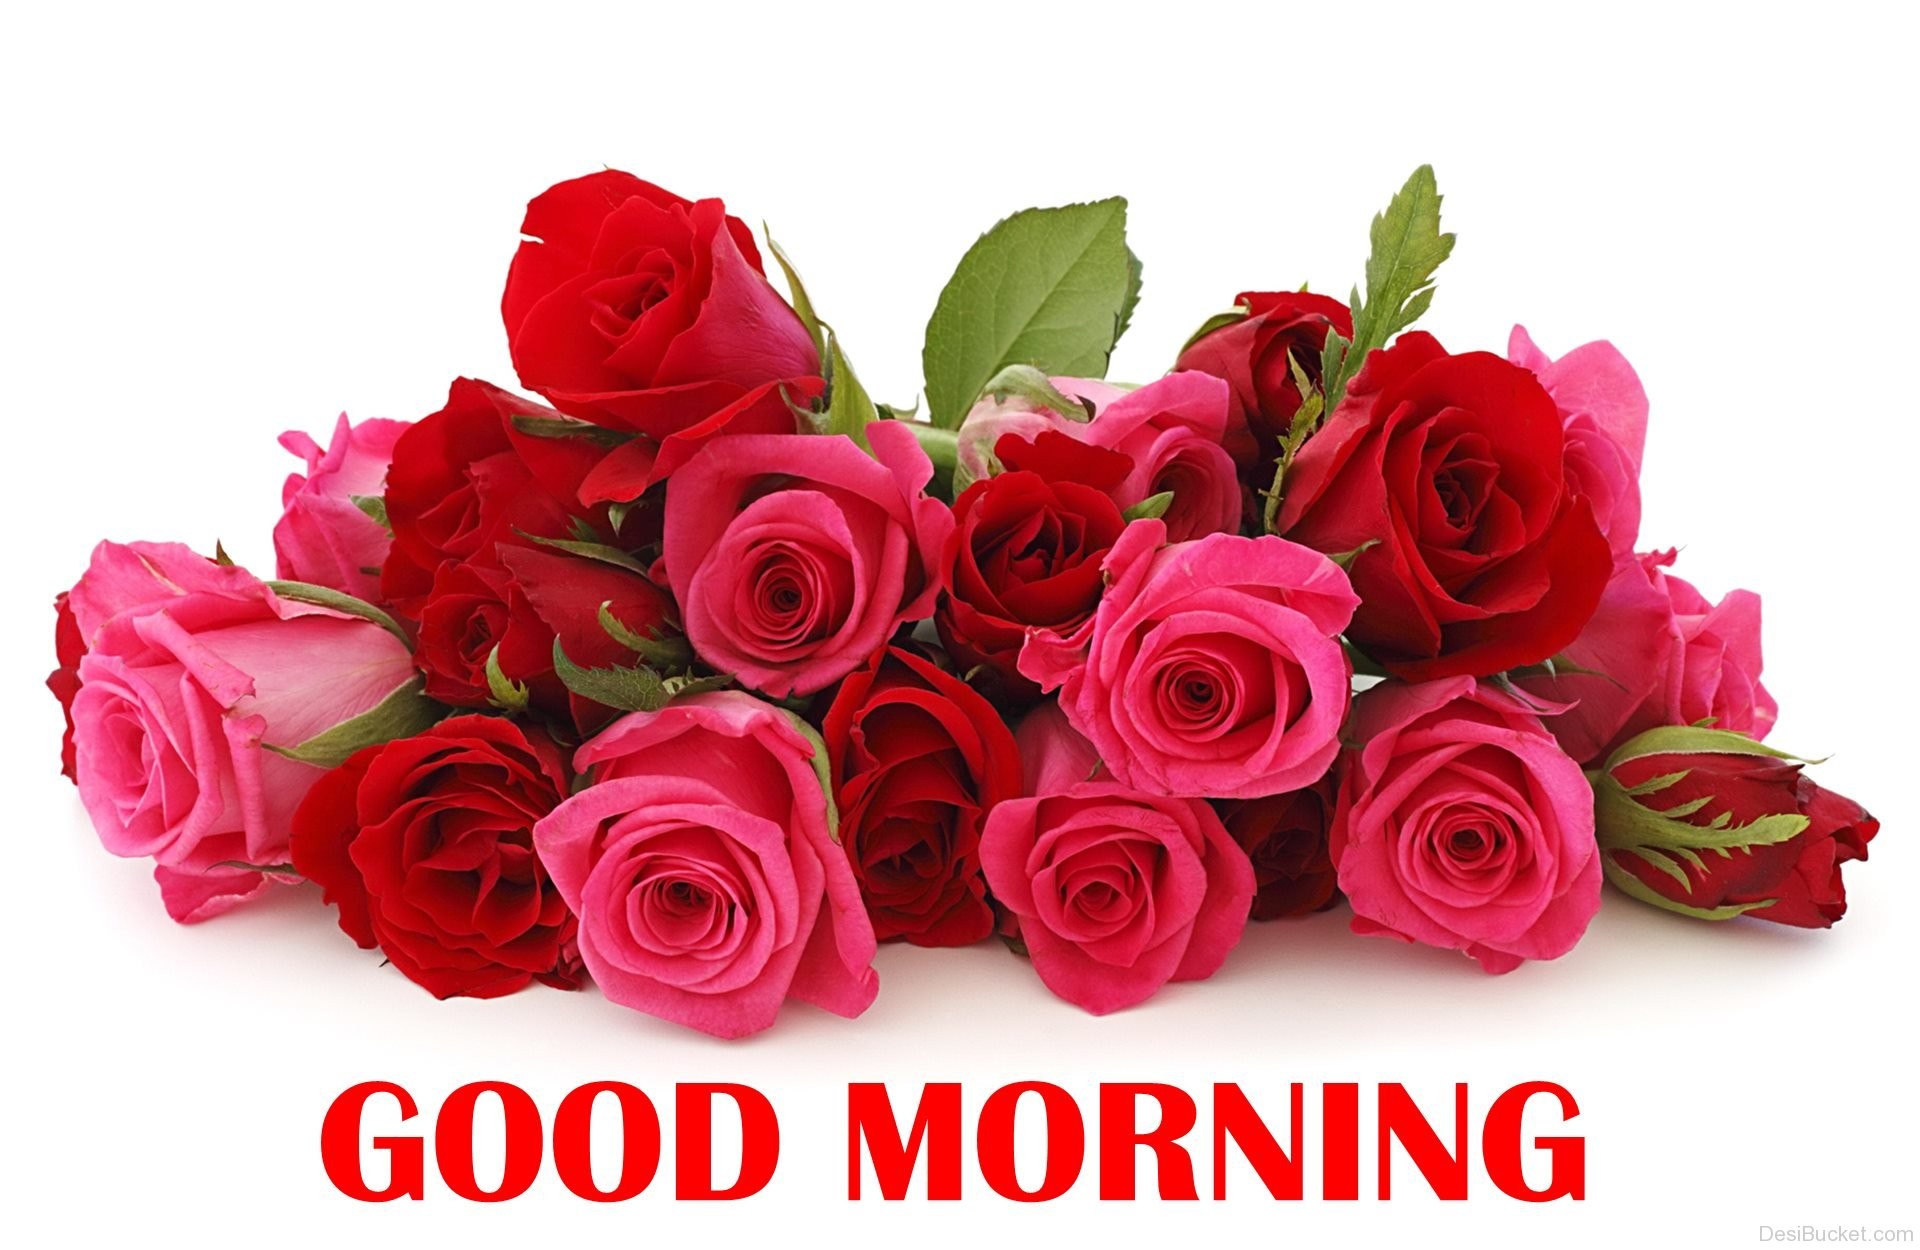 Hoa hồng chào buổi sáng là món quà tuyệt vời để bắt đầu một ngày mới tràn đầy năng lượng và đam mê. Hãy cùng thưởng thức những hình ảnh đẹp nhất của những bông hoa hồng tượng trưng cho tình bạn và tình yêu trong buổi sáng.